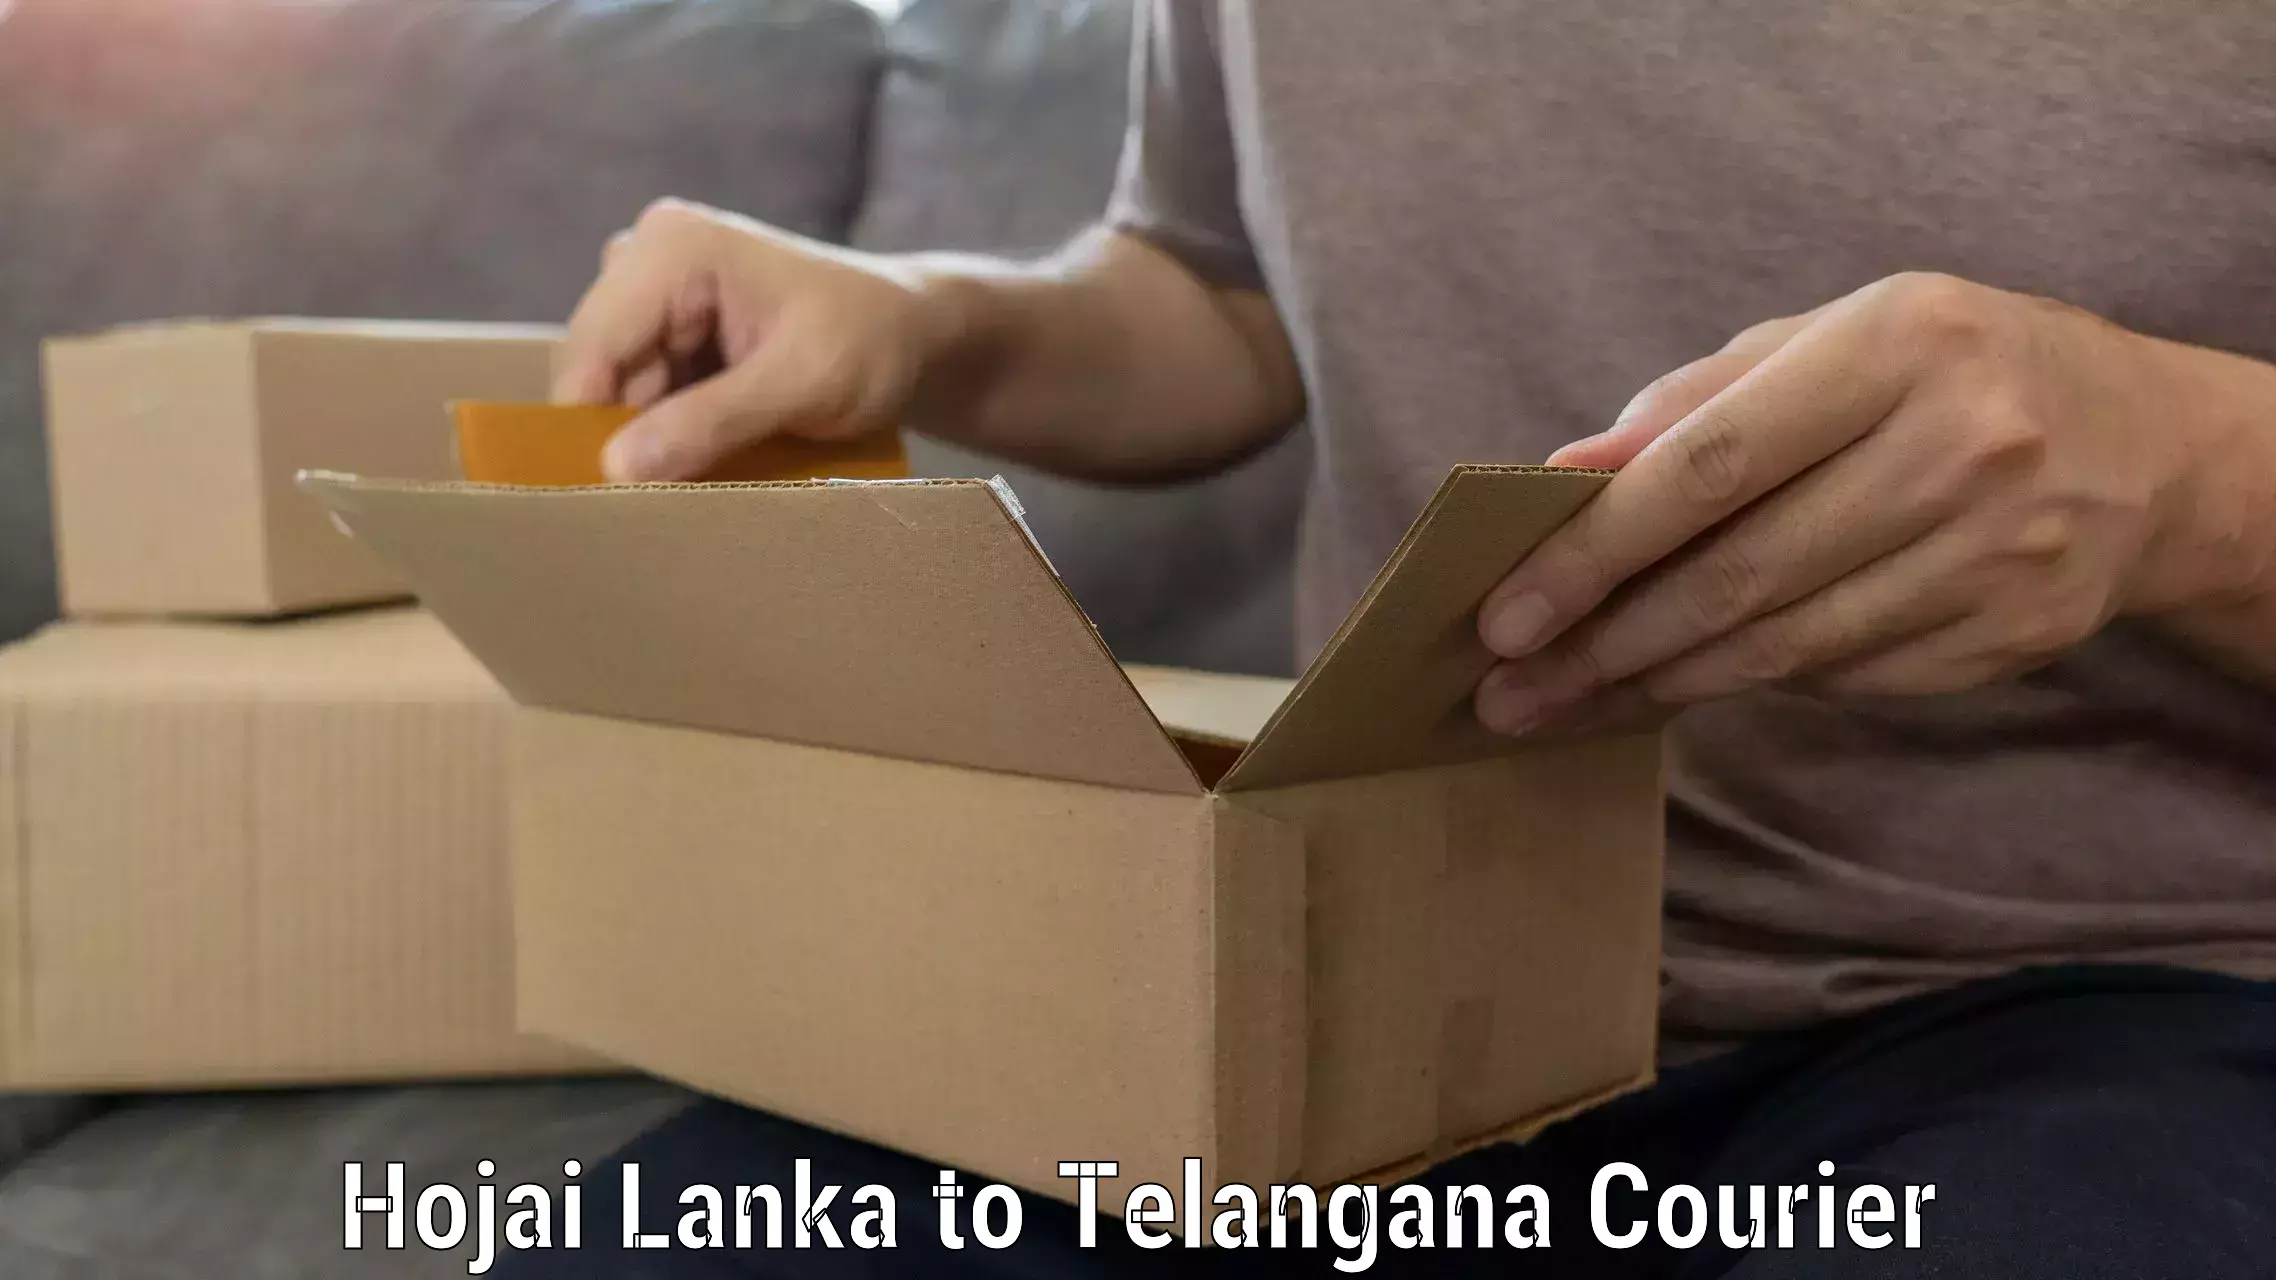 Efficient furniture movers Hojai Lanka to Sikanderguda